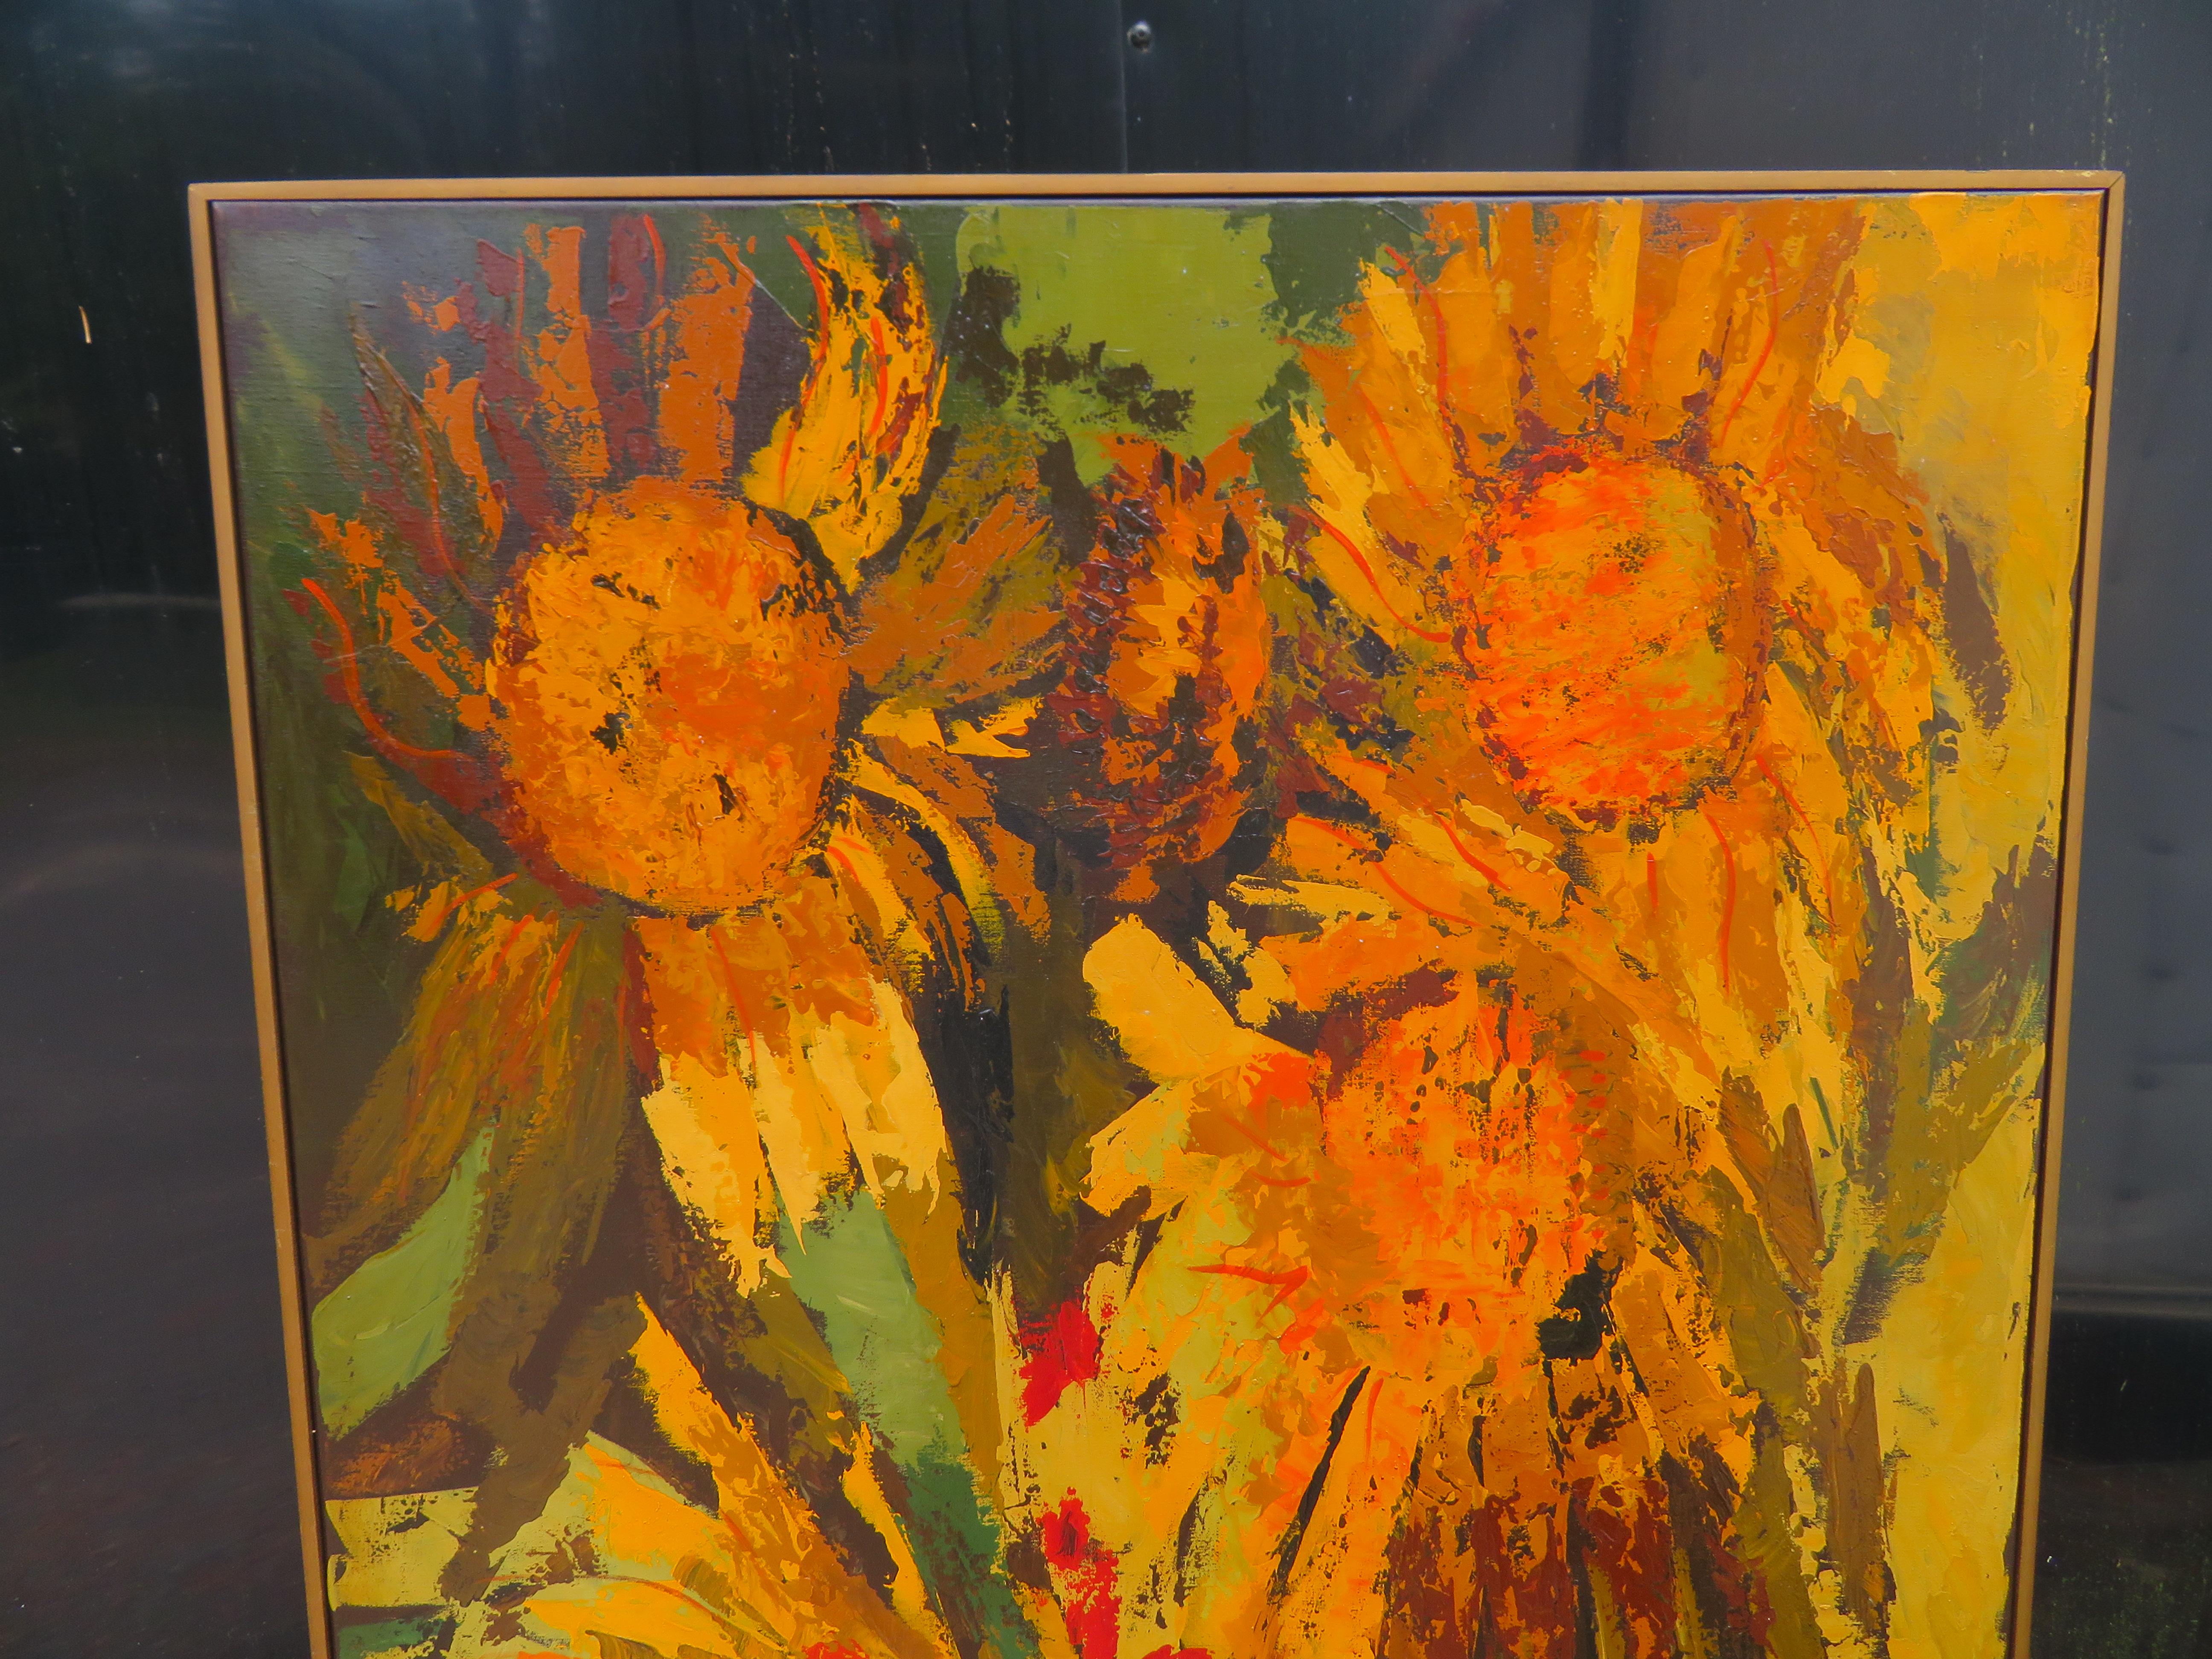 Vibrante peinture à l'huile XL vintage 60's Mid-century G Virkala sun flowers. Nous aimons tout simplement cette peinture audacieuse à grande échelle, avec ses énormes coups de pinceau et son utilisation de la couleur. Il mesure 62in L X 41in H x 2